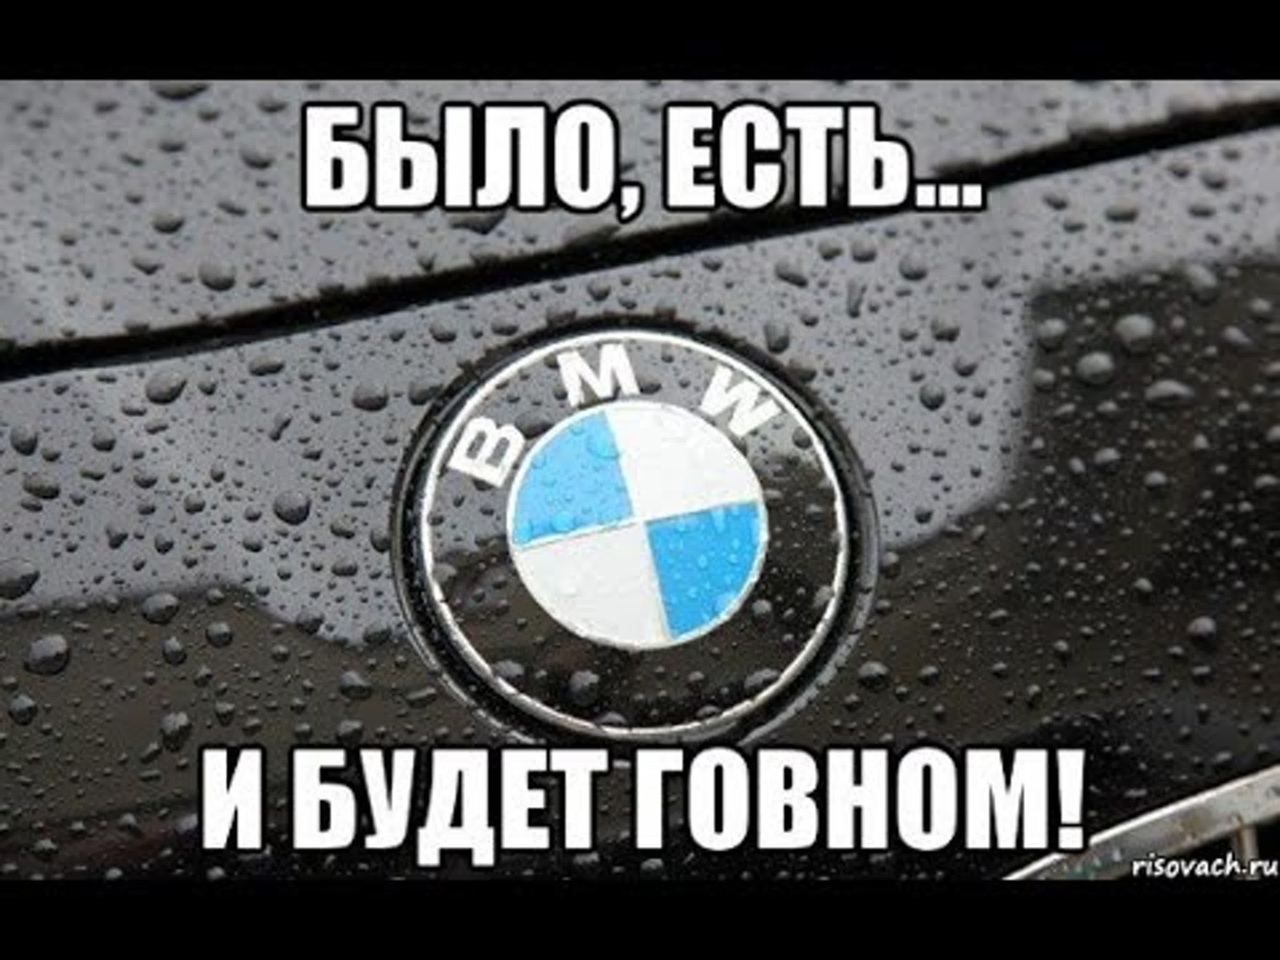 Было есть. BMW прикольные картинки. Мемы про БМВ. Приколы про БМВ картинки. Приколы про БМВ м3.